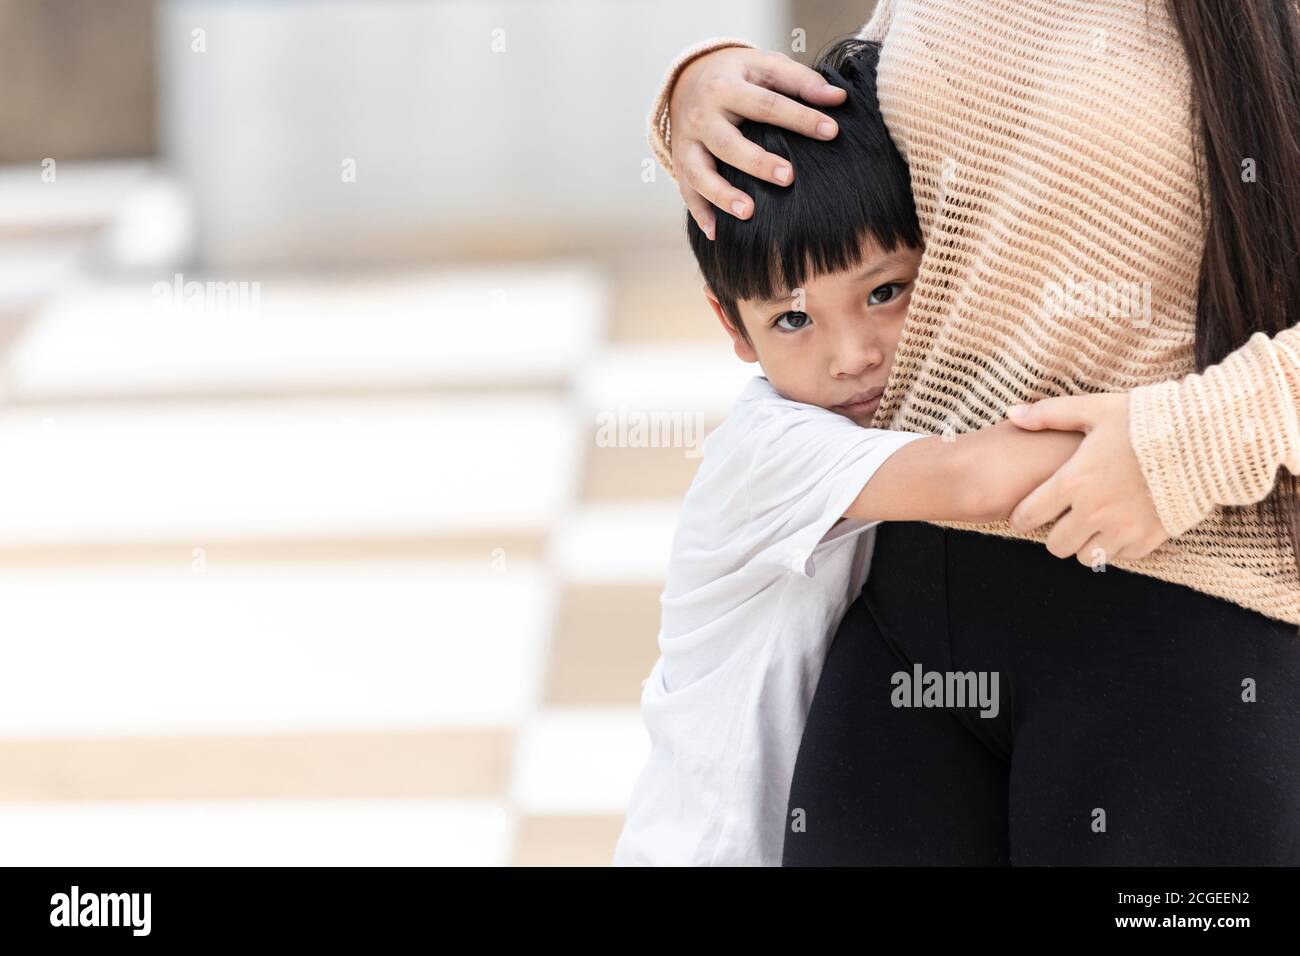 Der Junge hatte Angst und umarmte seine Mutter. Asiatische kleines Kind ist traurig und Angst. Häusliche Familie Gewalt Konzept. Stockfoto